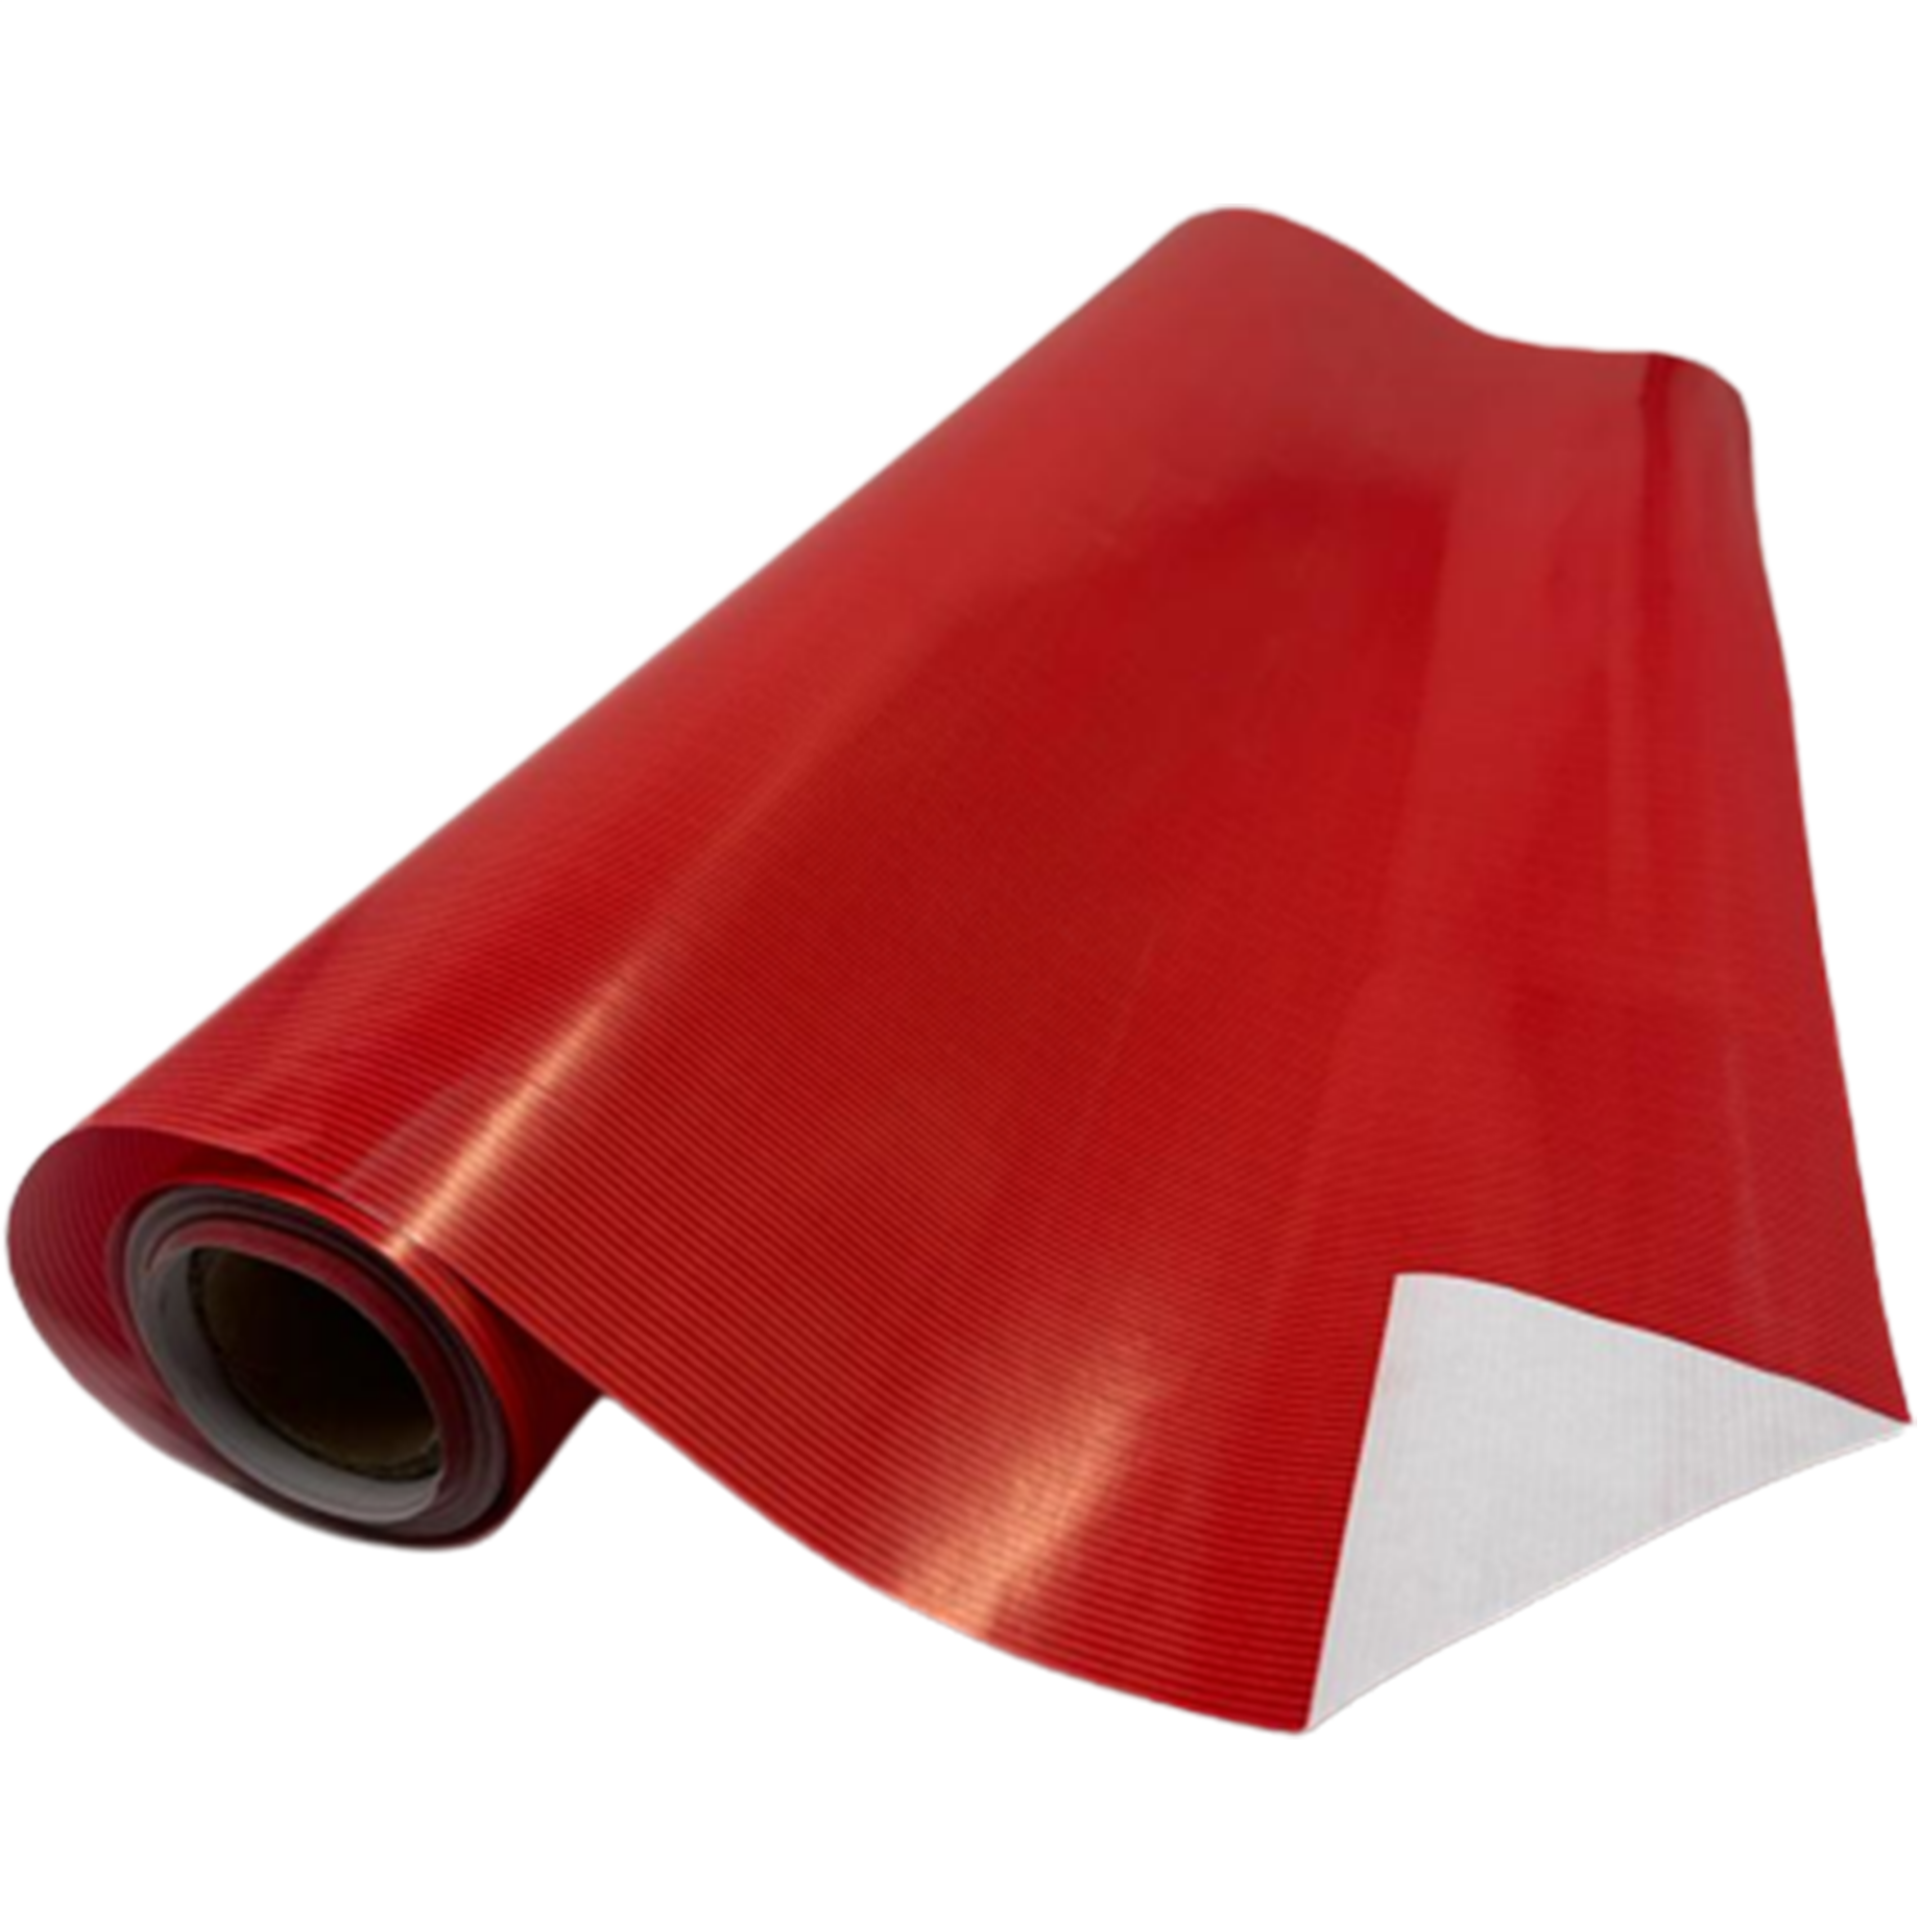 Hediye Paketleme Kağıdı - Kırmızı - 70 cm x 25 metre - Hediye Ambalaj Kağıdı